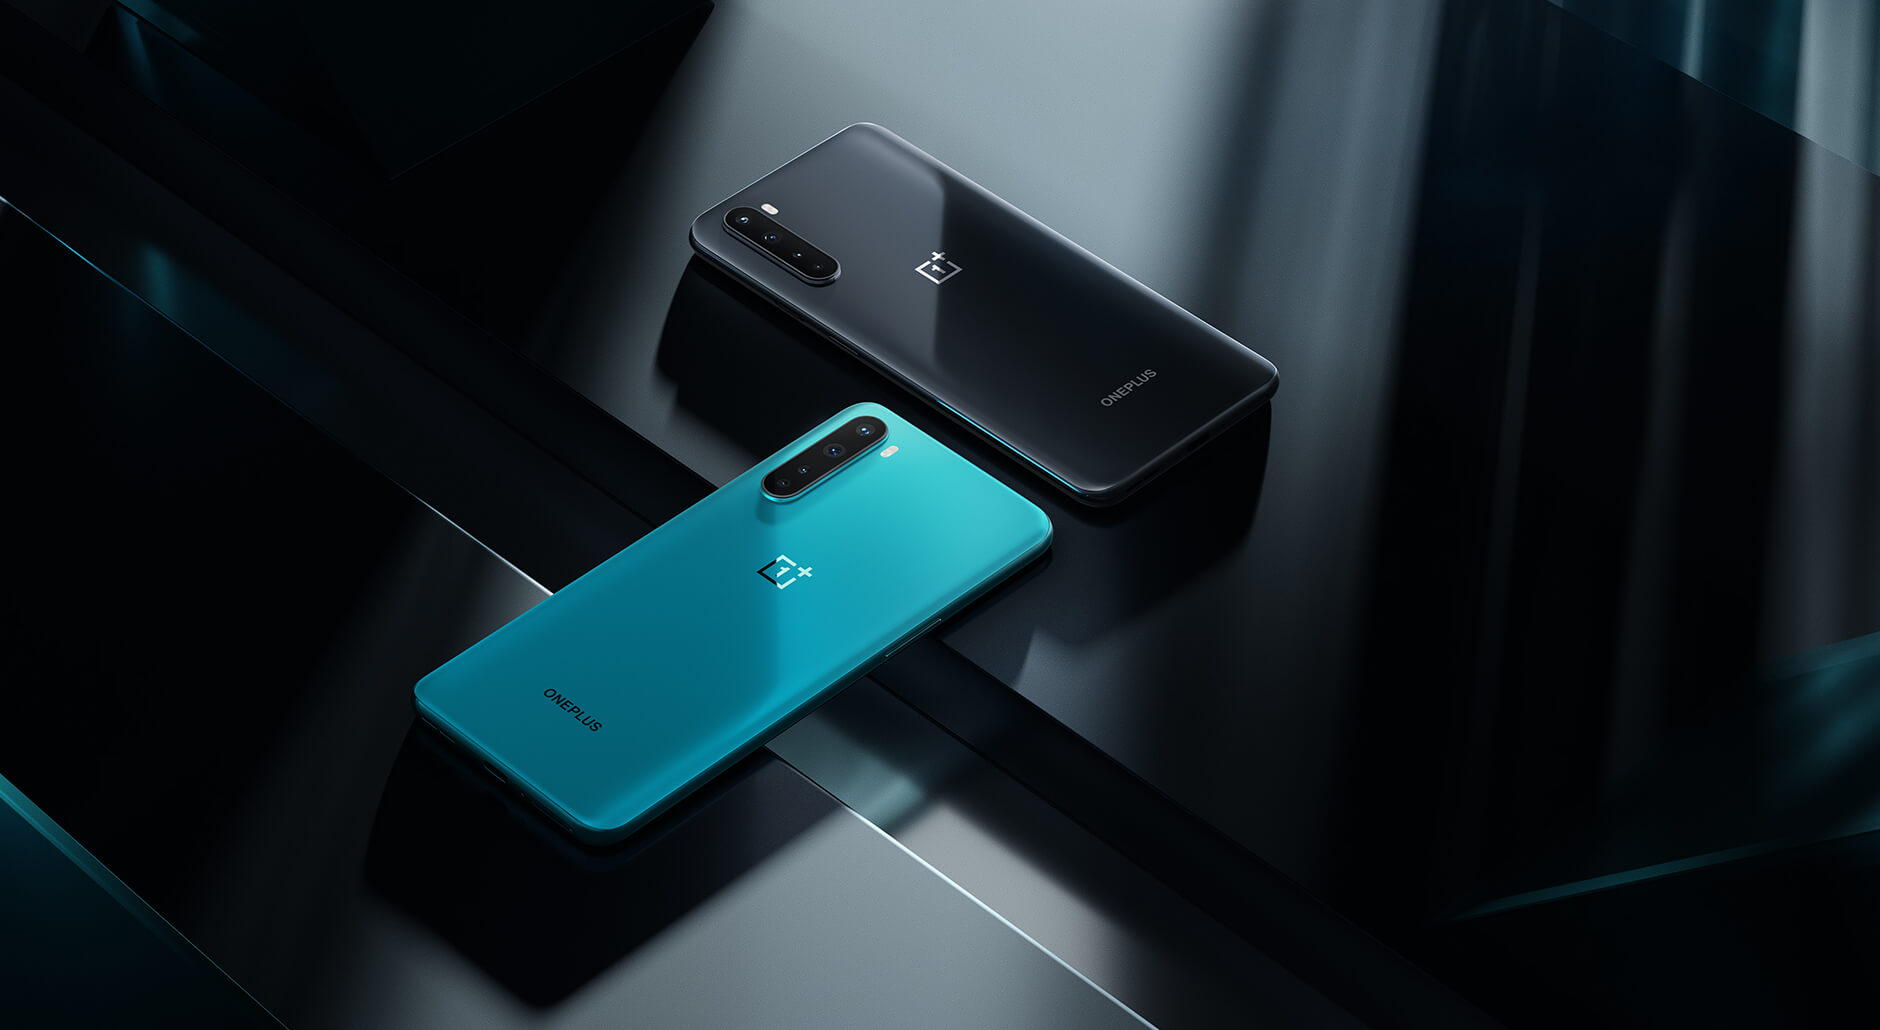 Представлен OnePlus Nord – квадрокамера, 5G и 12 ГБ ОЗУ по цене 399 евро